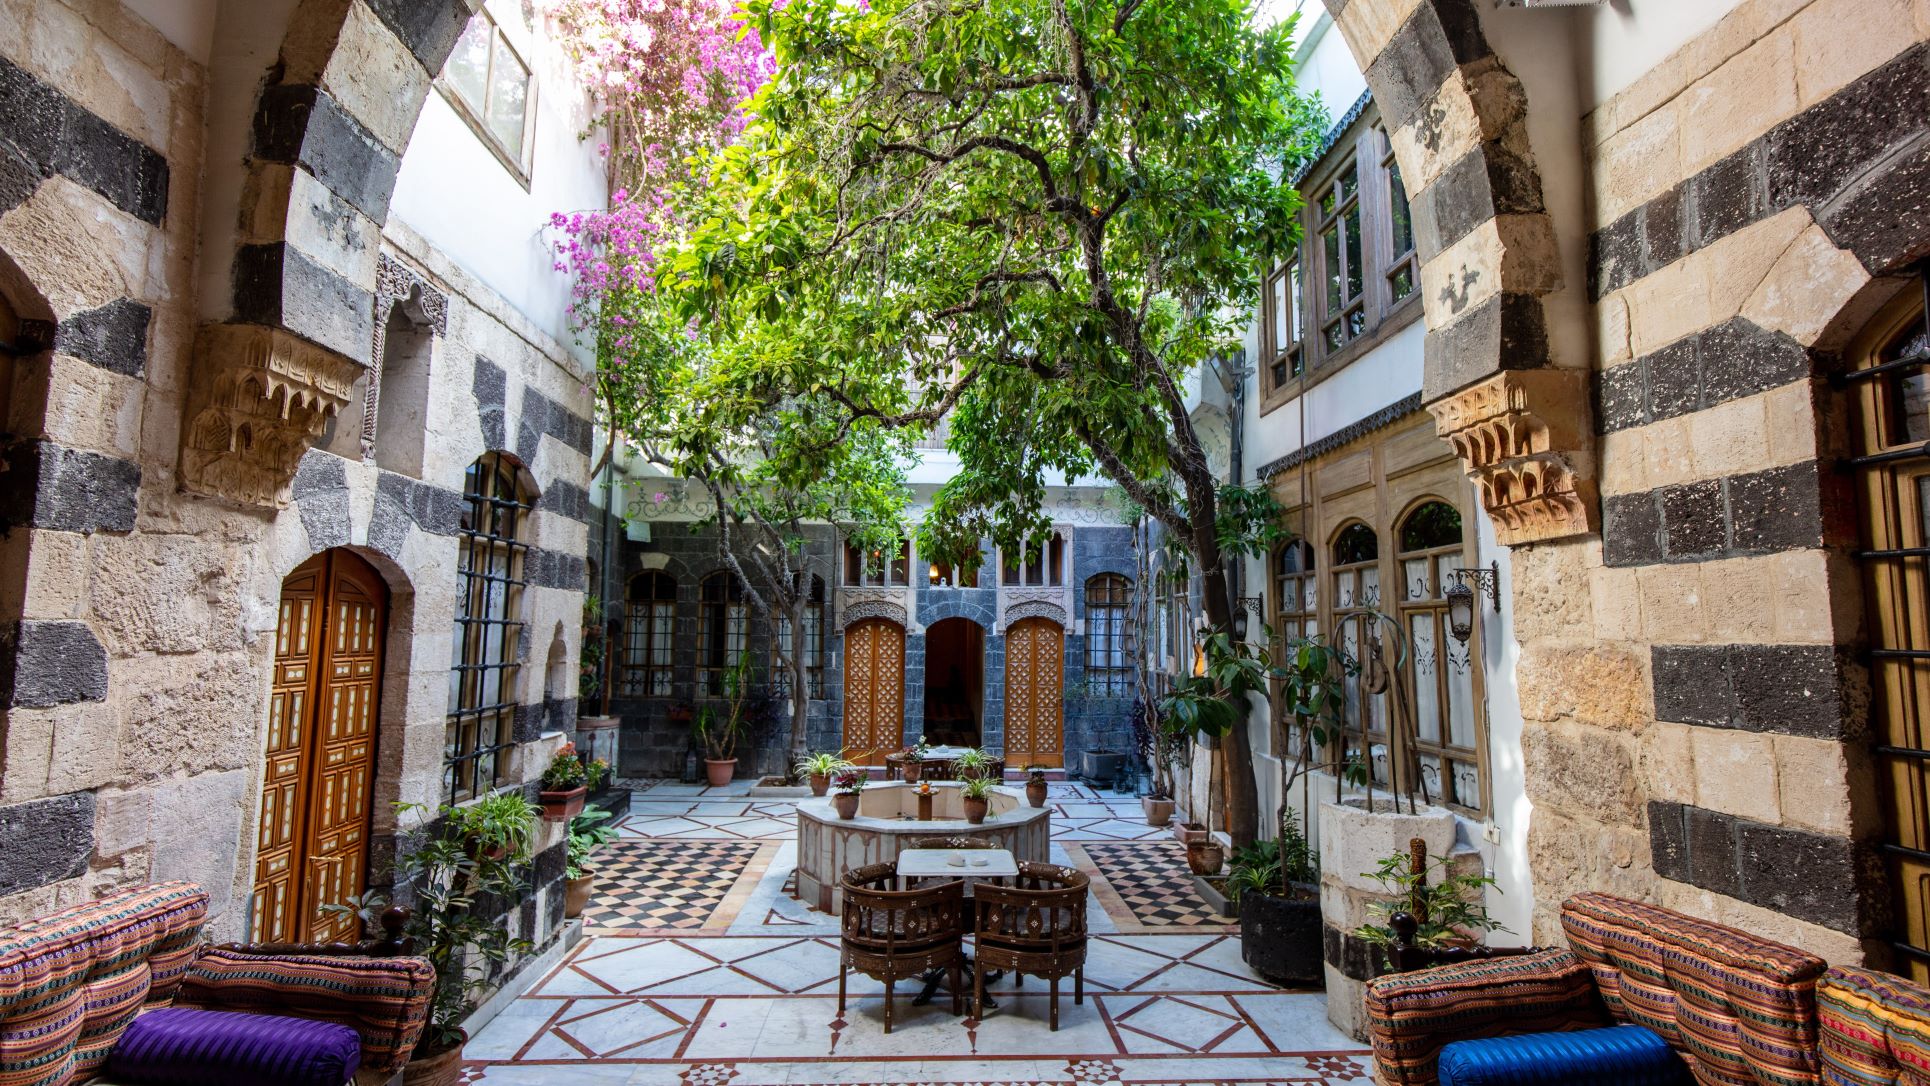 Beit-Mamlouka-Courtyard-View-zirrar-ali-22